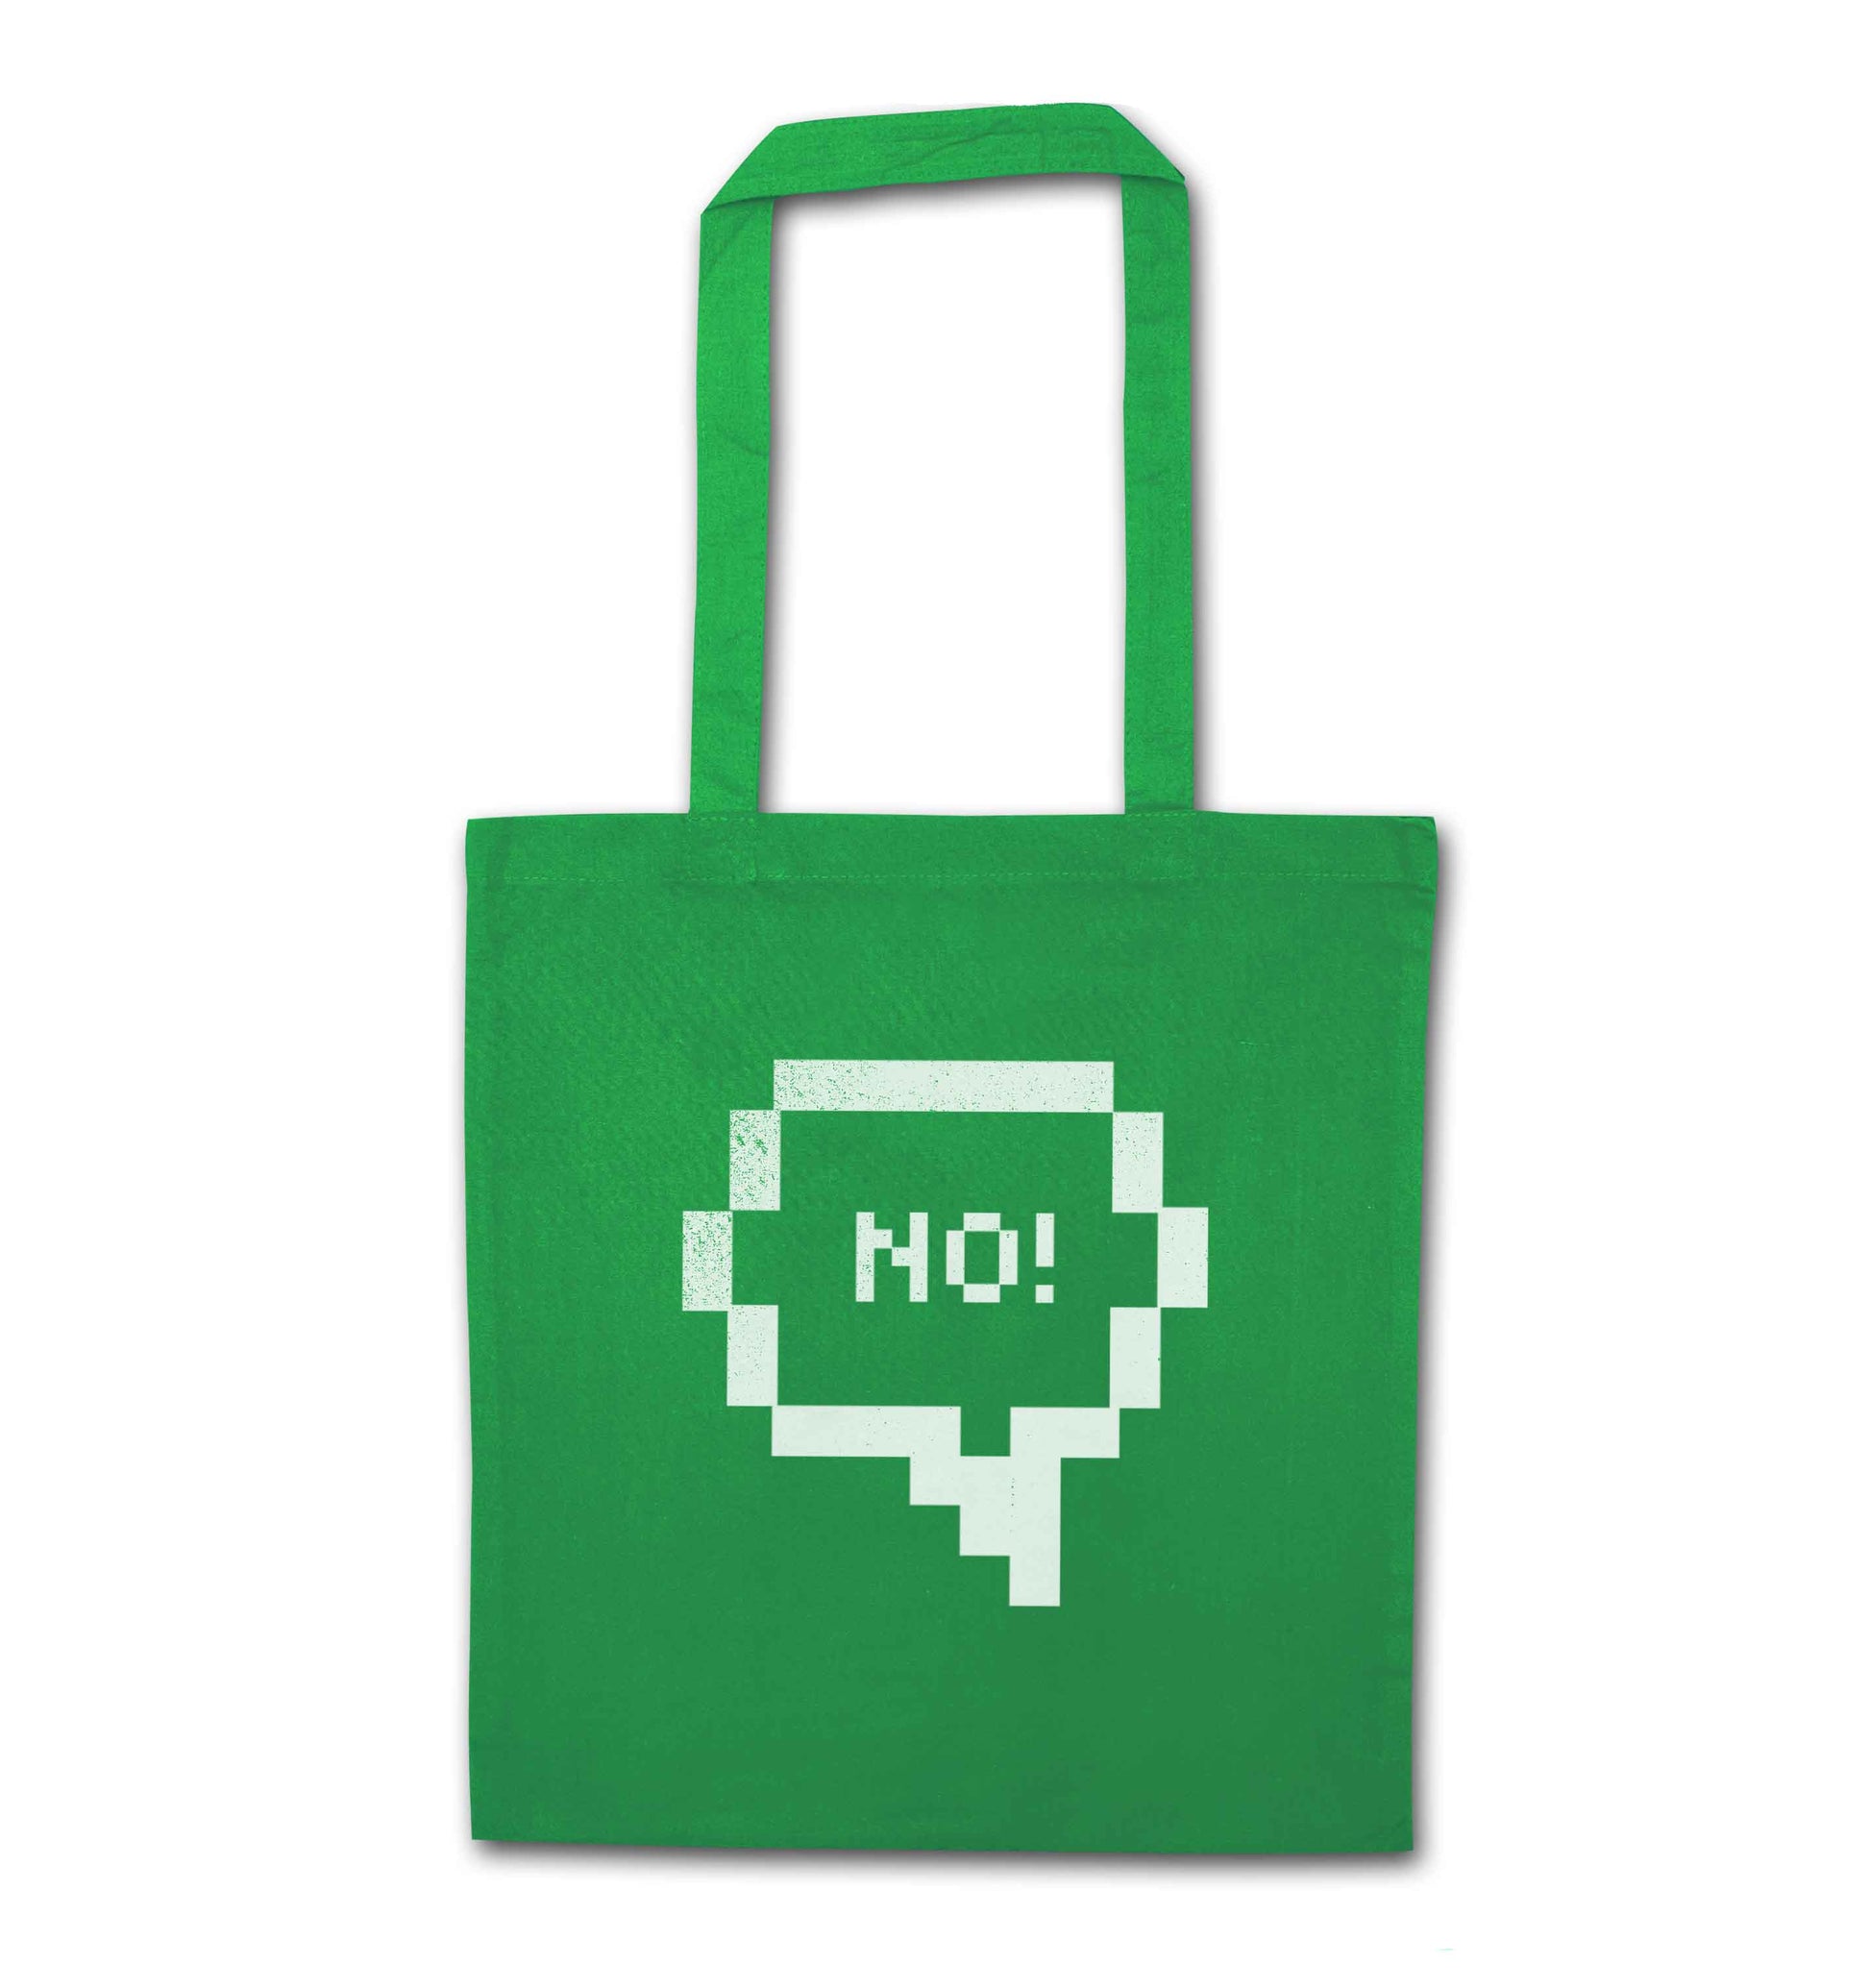 No green tote bag